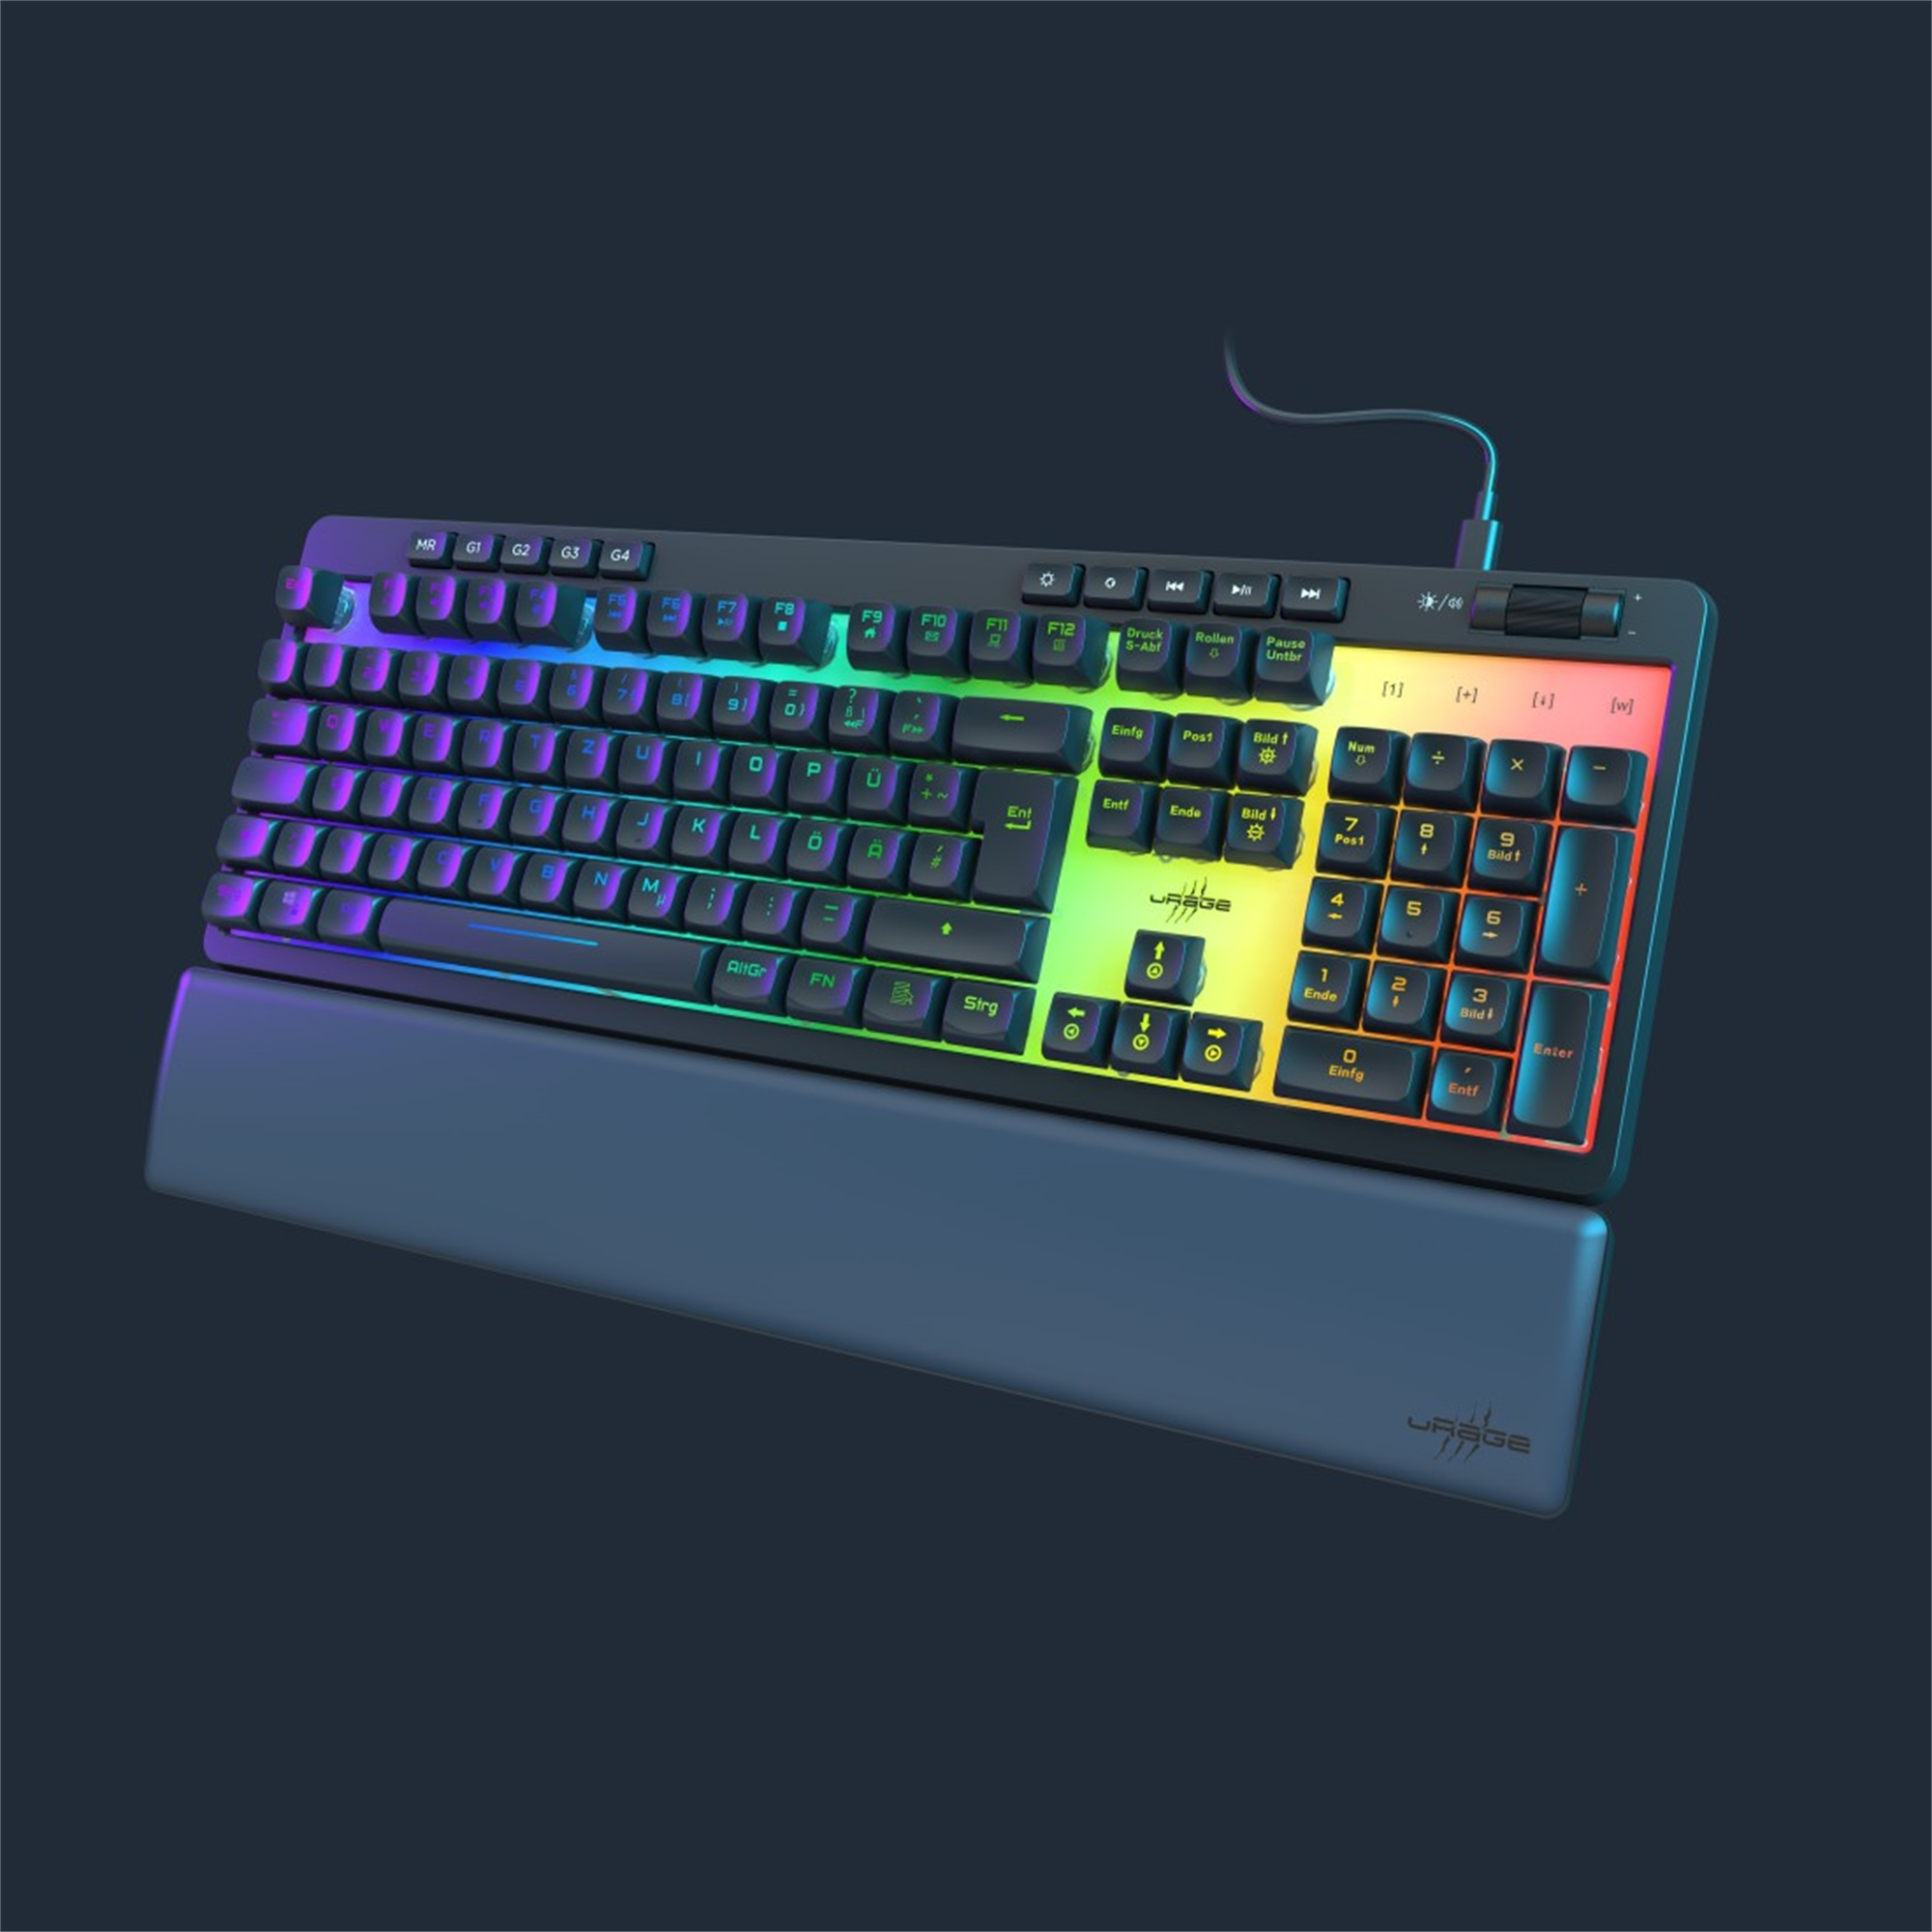 URAGE Exodus 515 Rubberdome Gaming-Tastatur, Illuminated